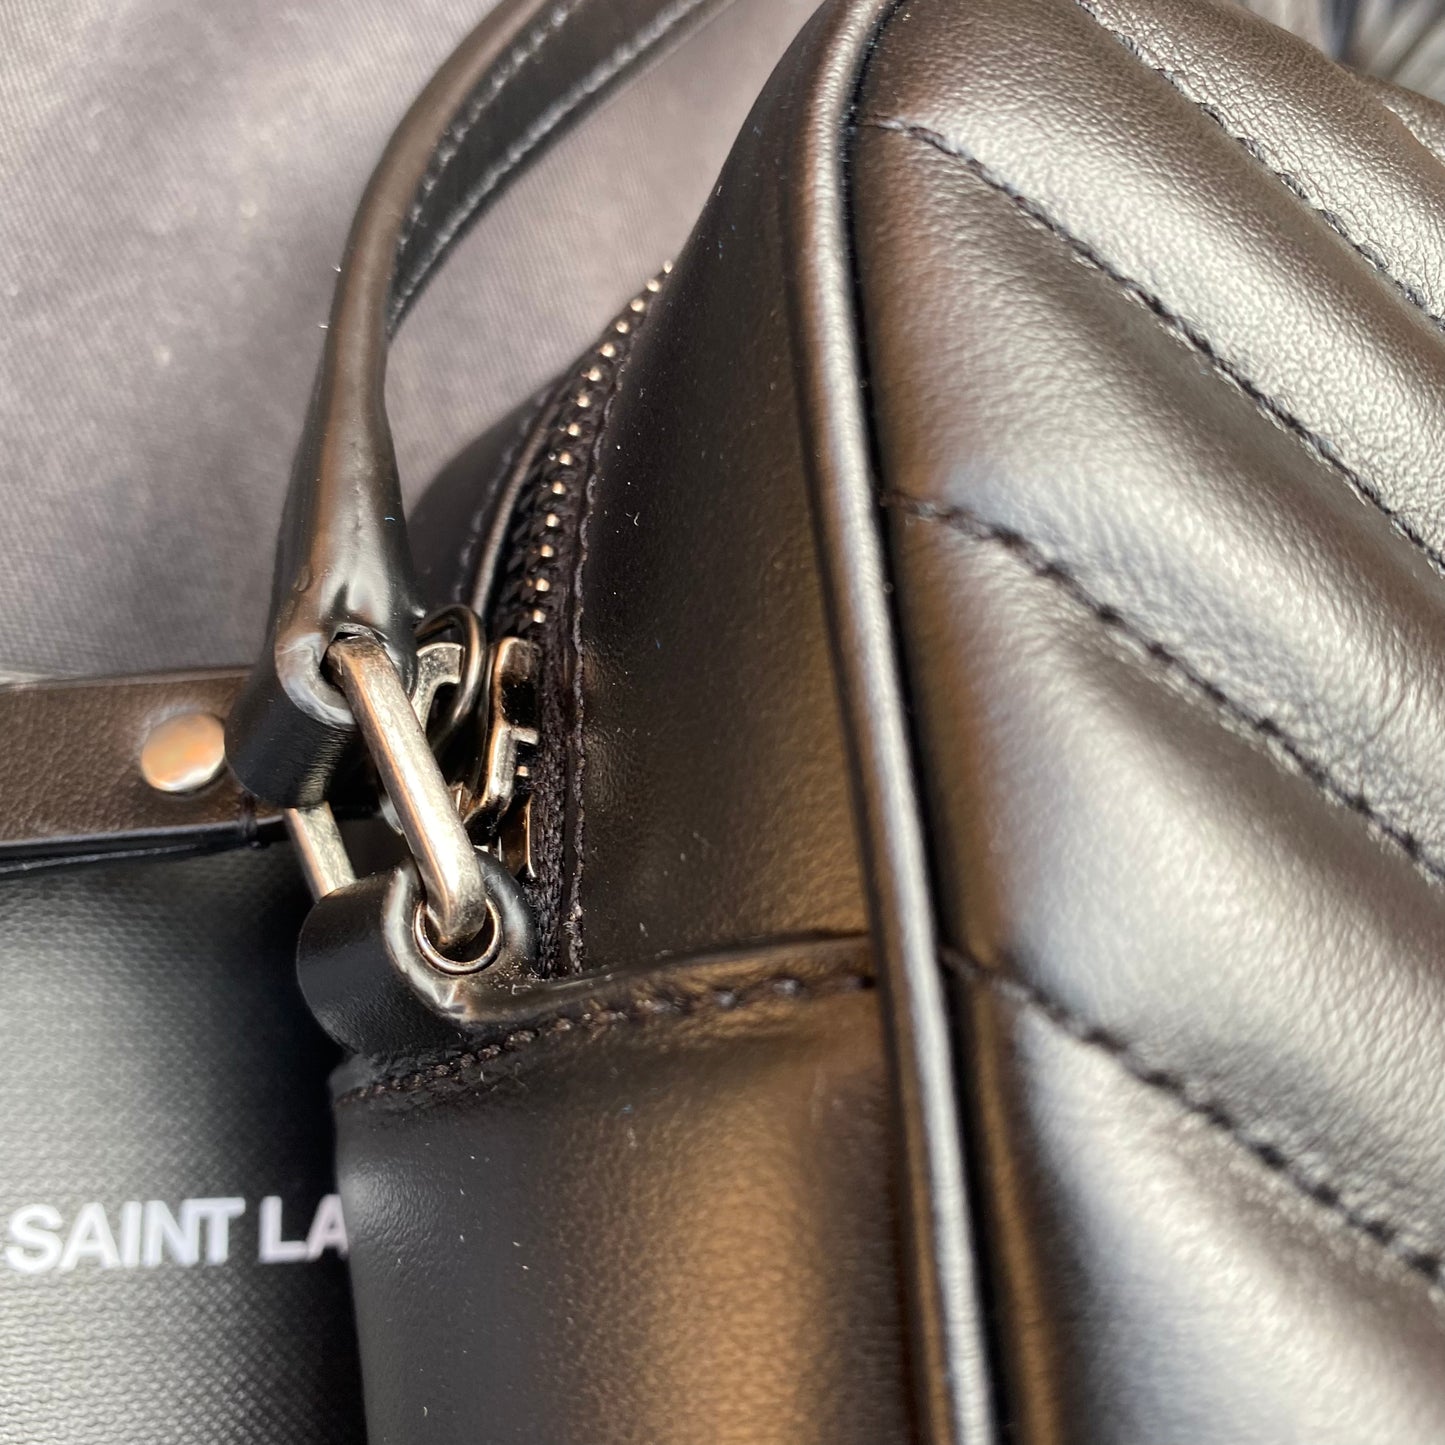 Saint Laurent Lou Matelassé Leather Camera Bag